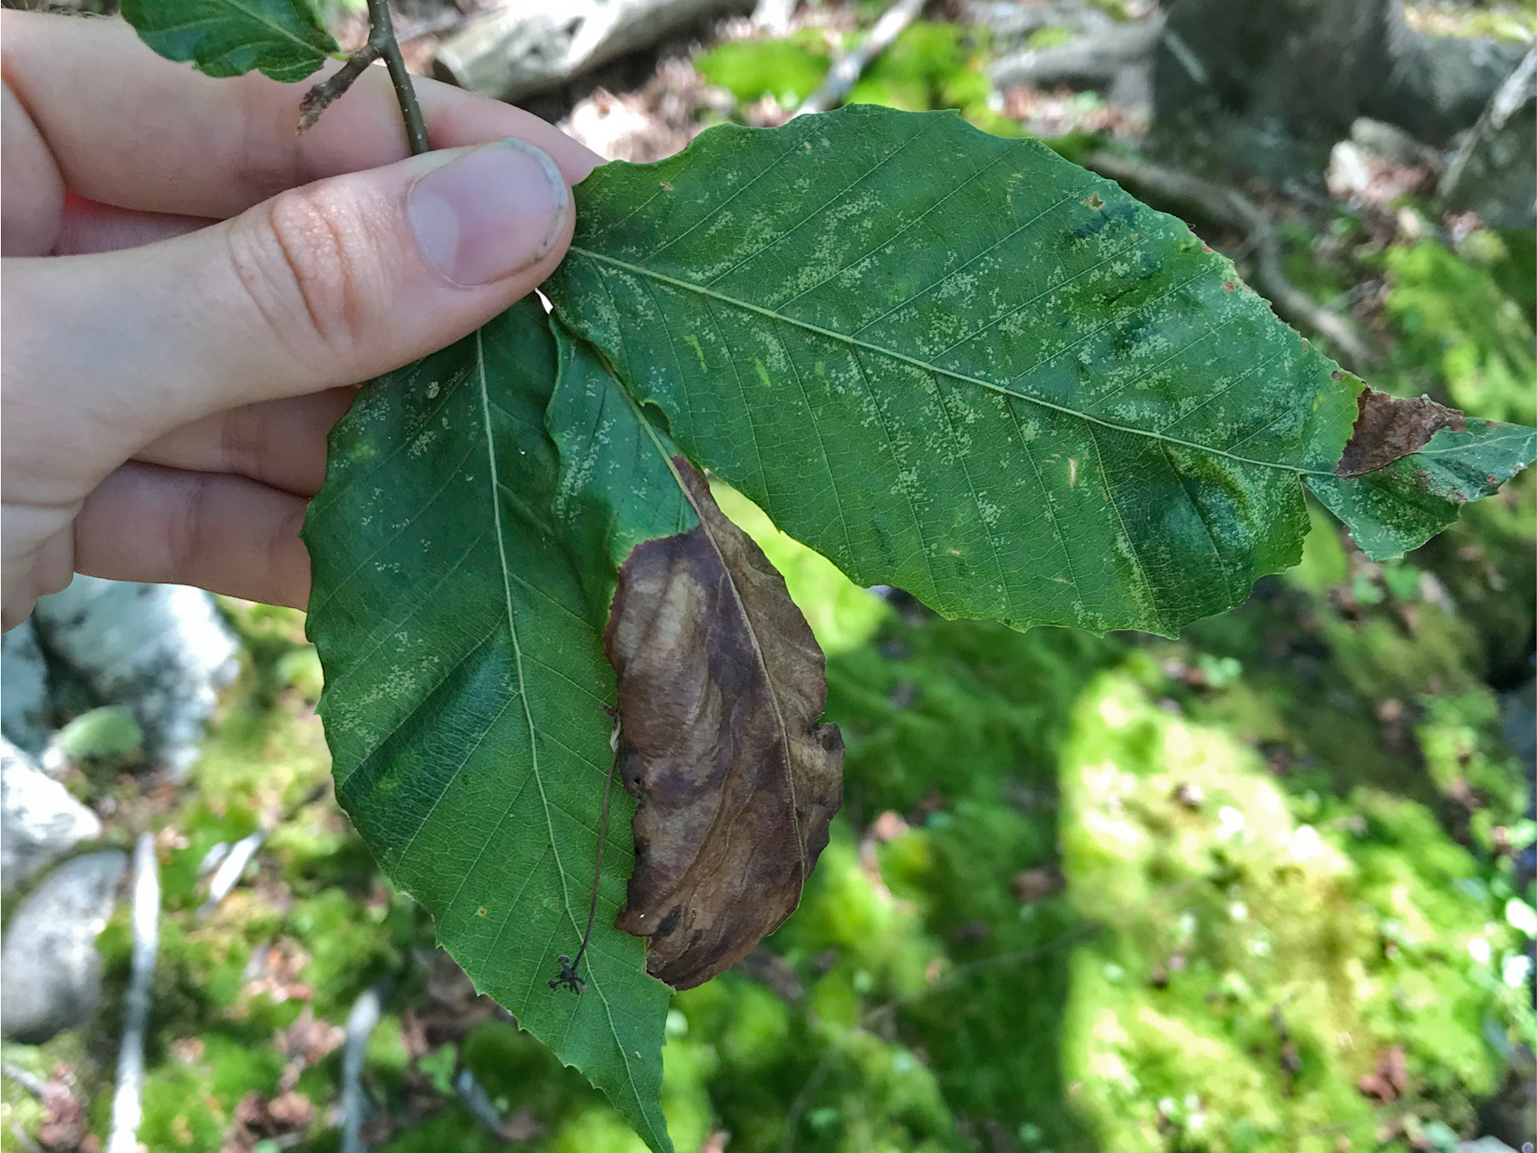 Beech leaf disease nematode